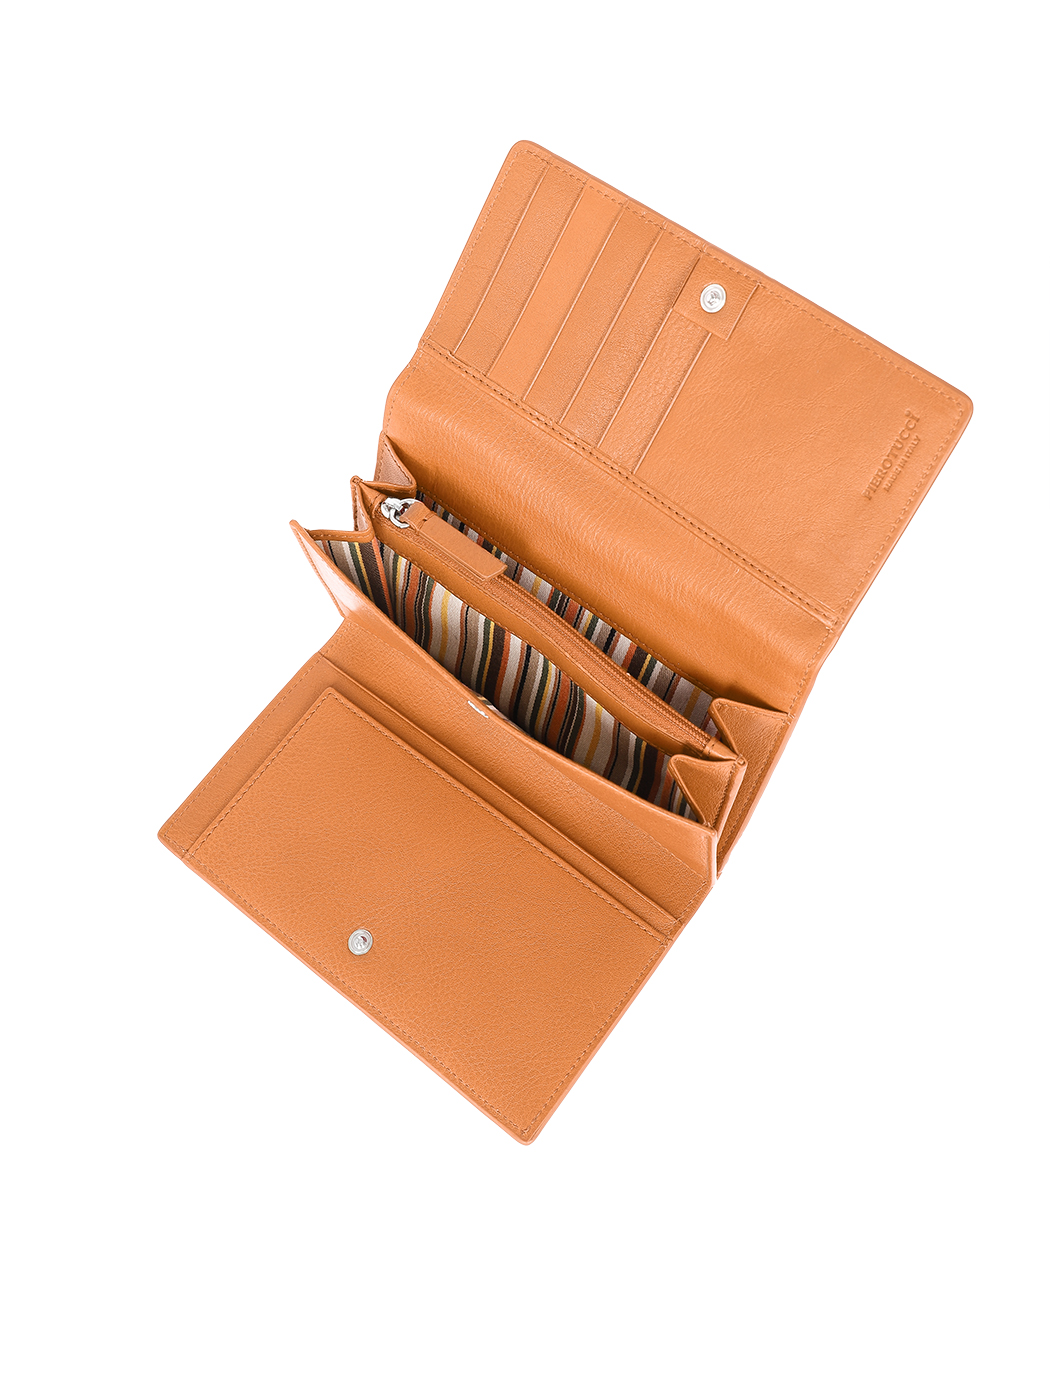 Tri-fold Leather Wallet Clutch Tobacco